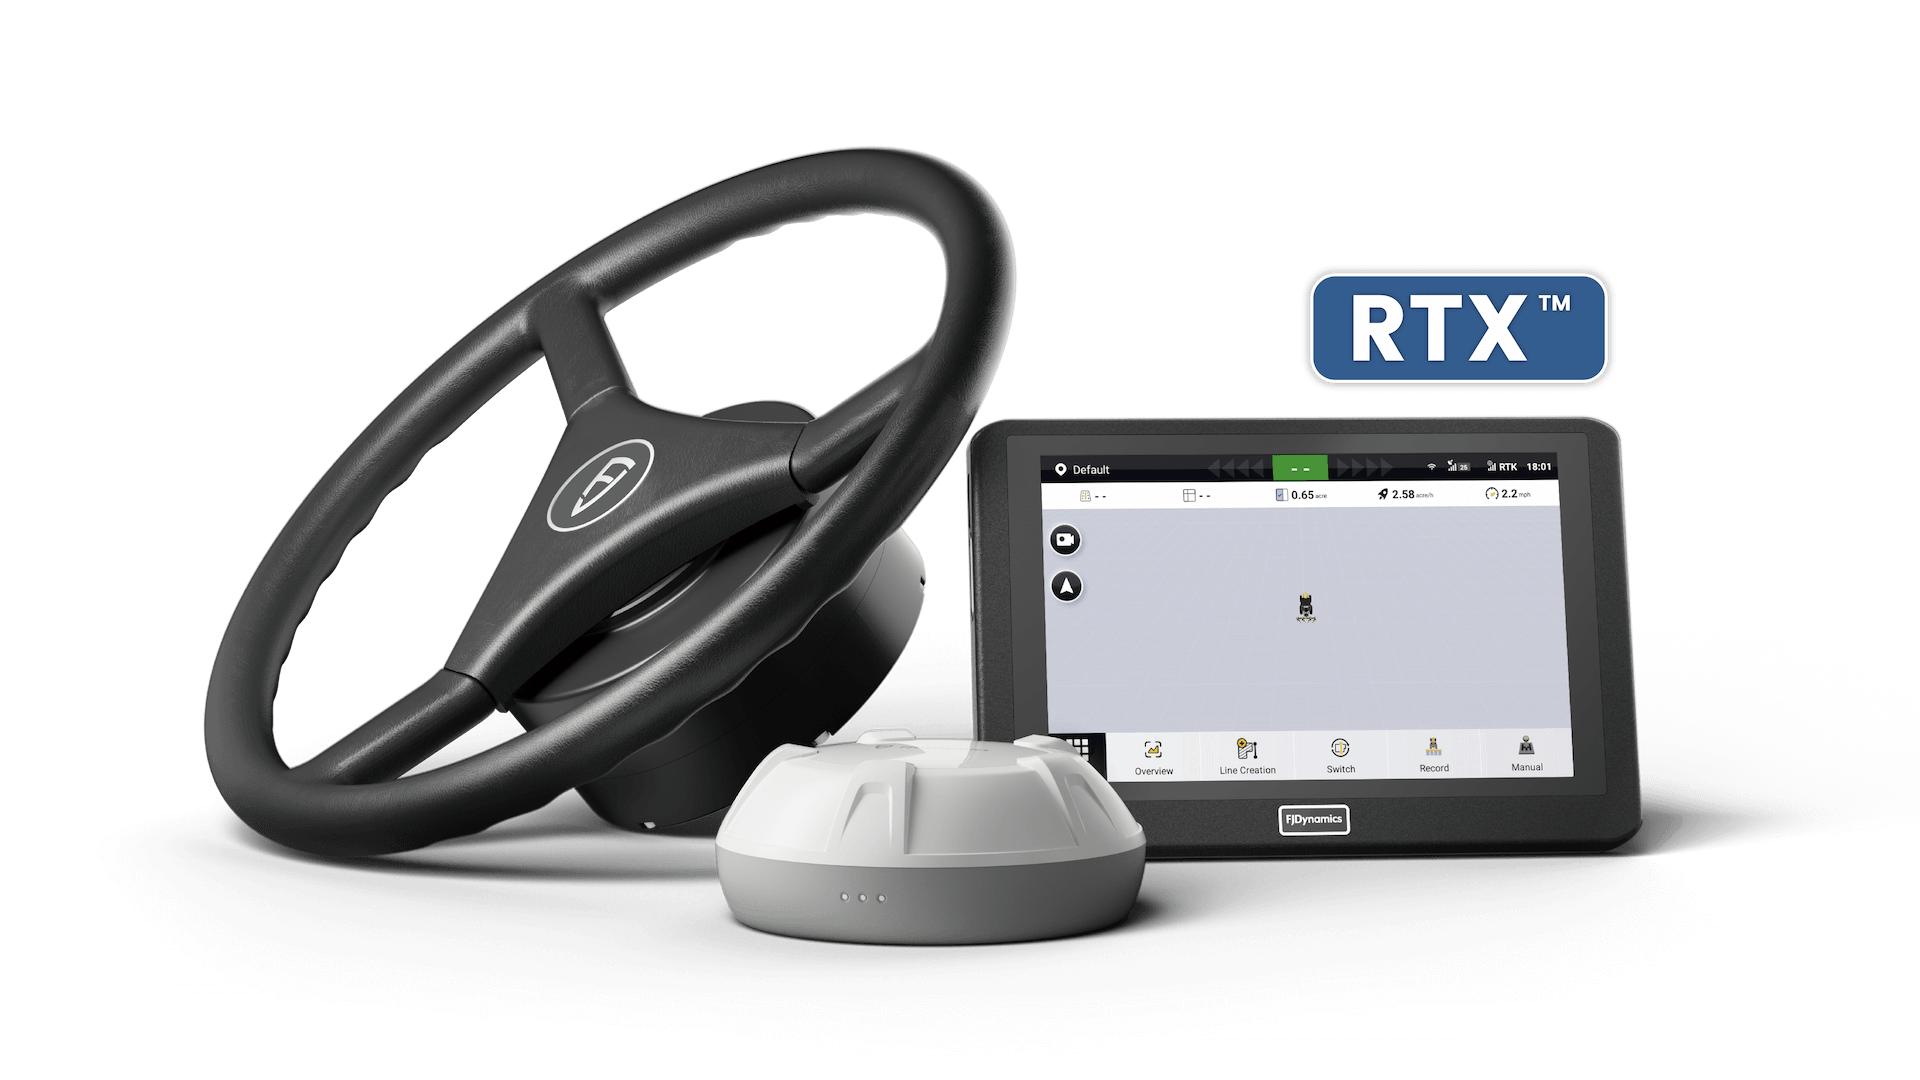 FJD AT2 PRO posiada wbudowany moduł korekcji RTX, oferujący centymetrową dokładność pozycjonowania za pośrednictwem subskrypcji.rest is good Jest dostępny na całym świecie bez potrzeby użycia stacji bazowej ani łączności z internetem, które ograniczają obszar działania.